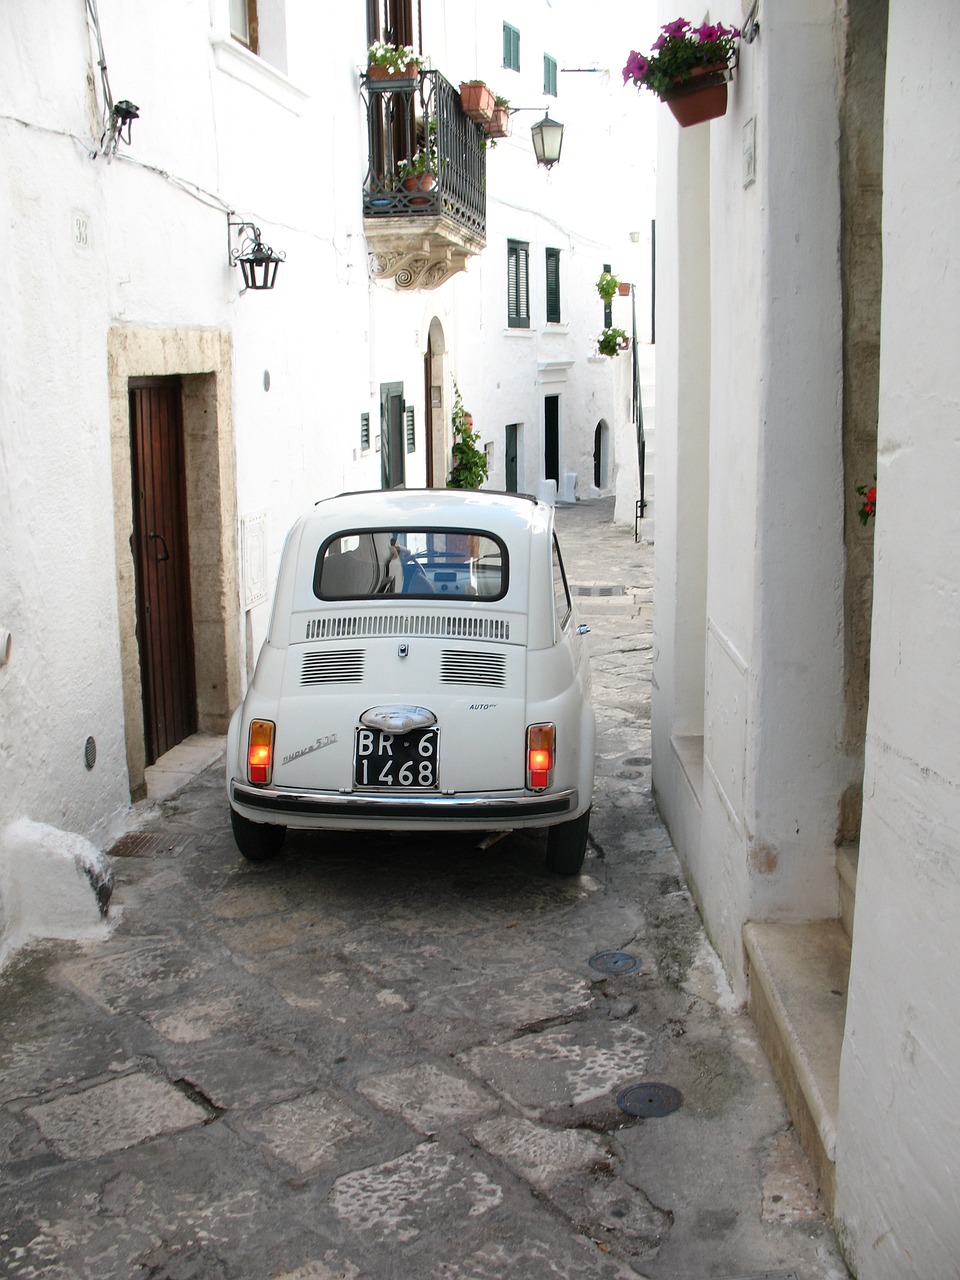  a Fiat in a street in Ostuni, Puglia